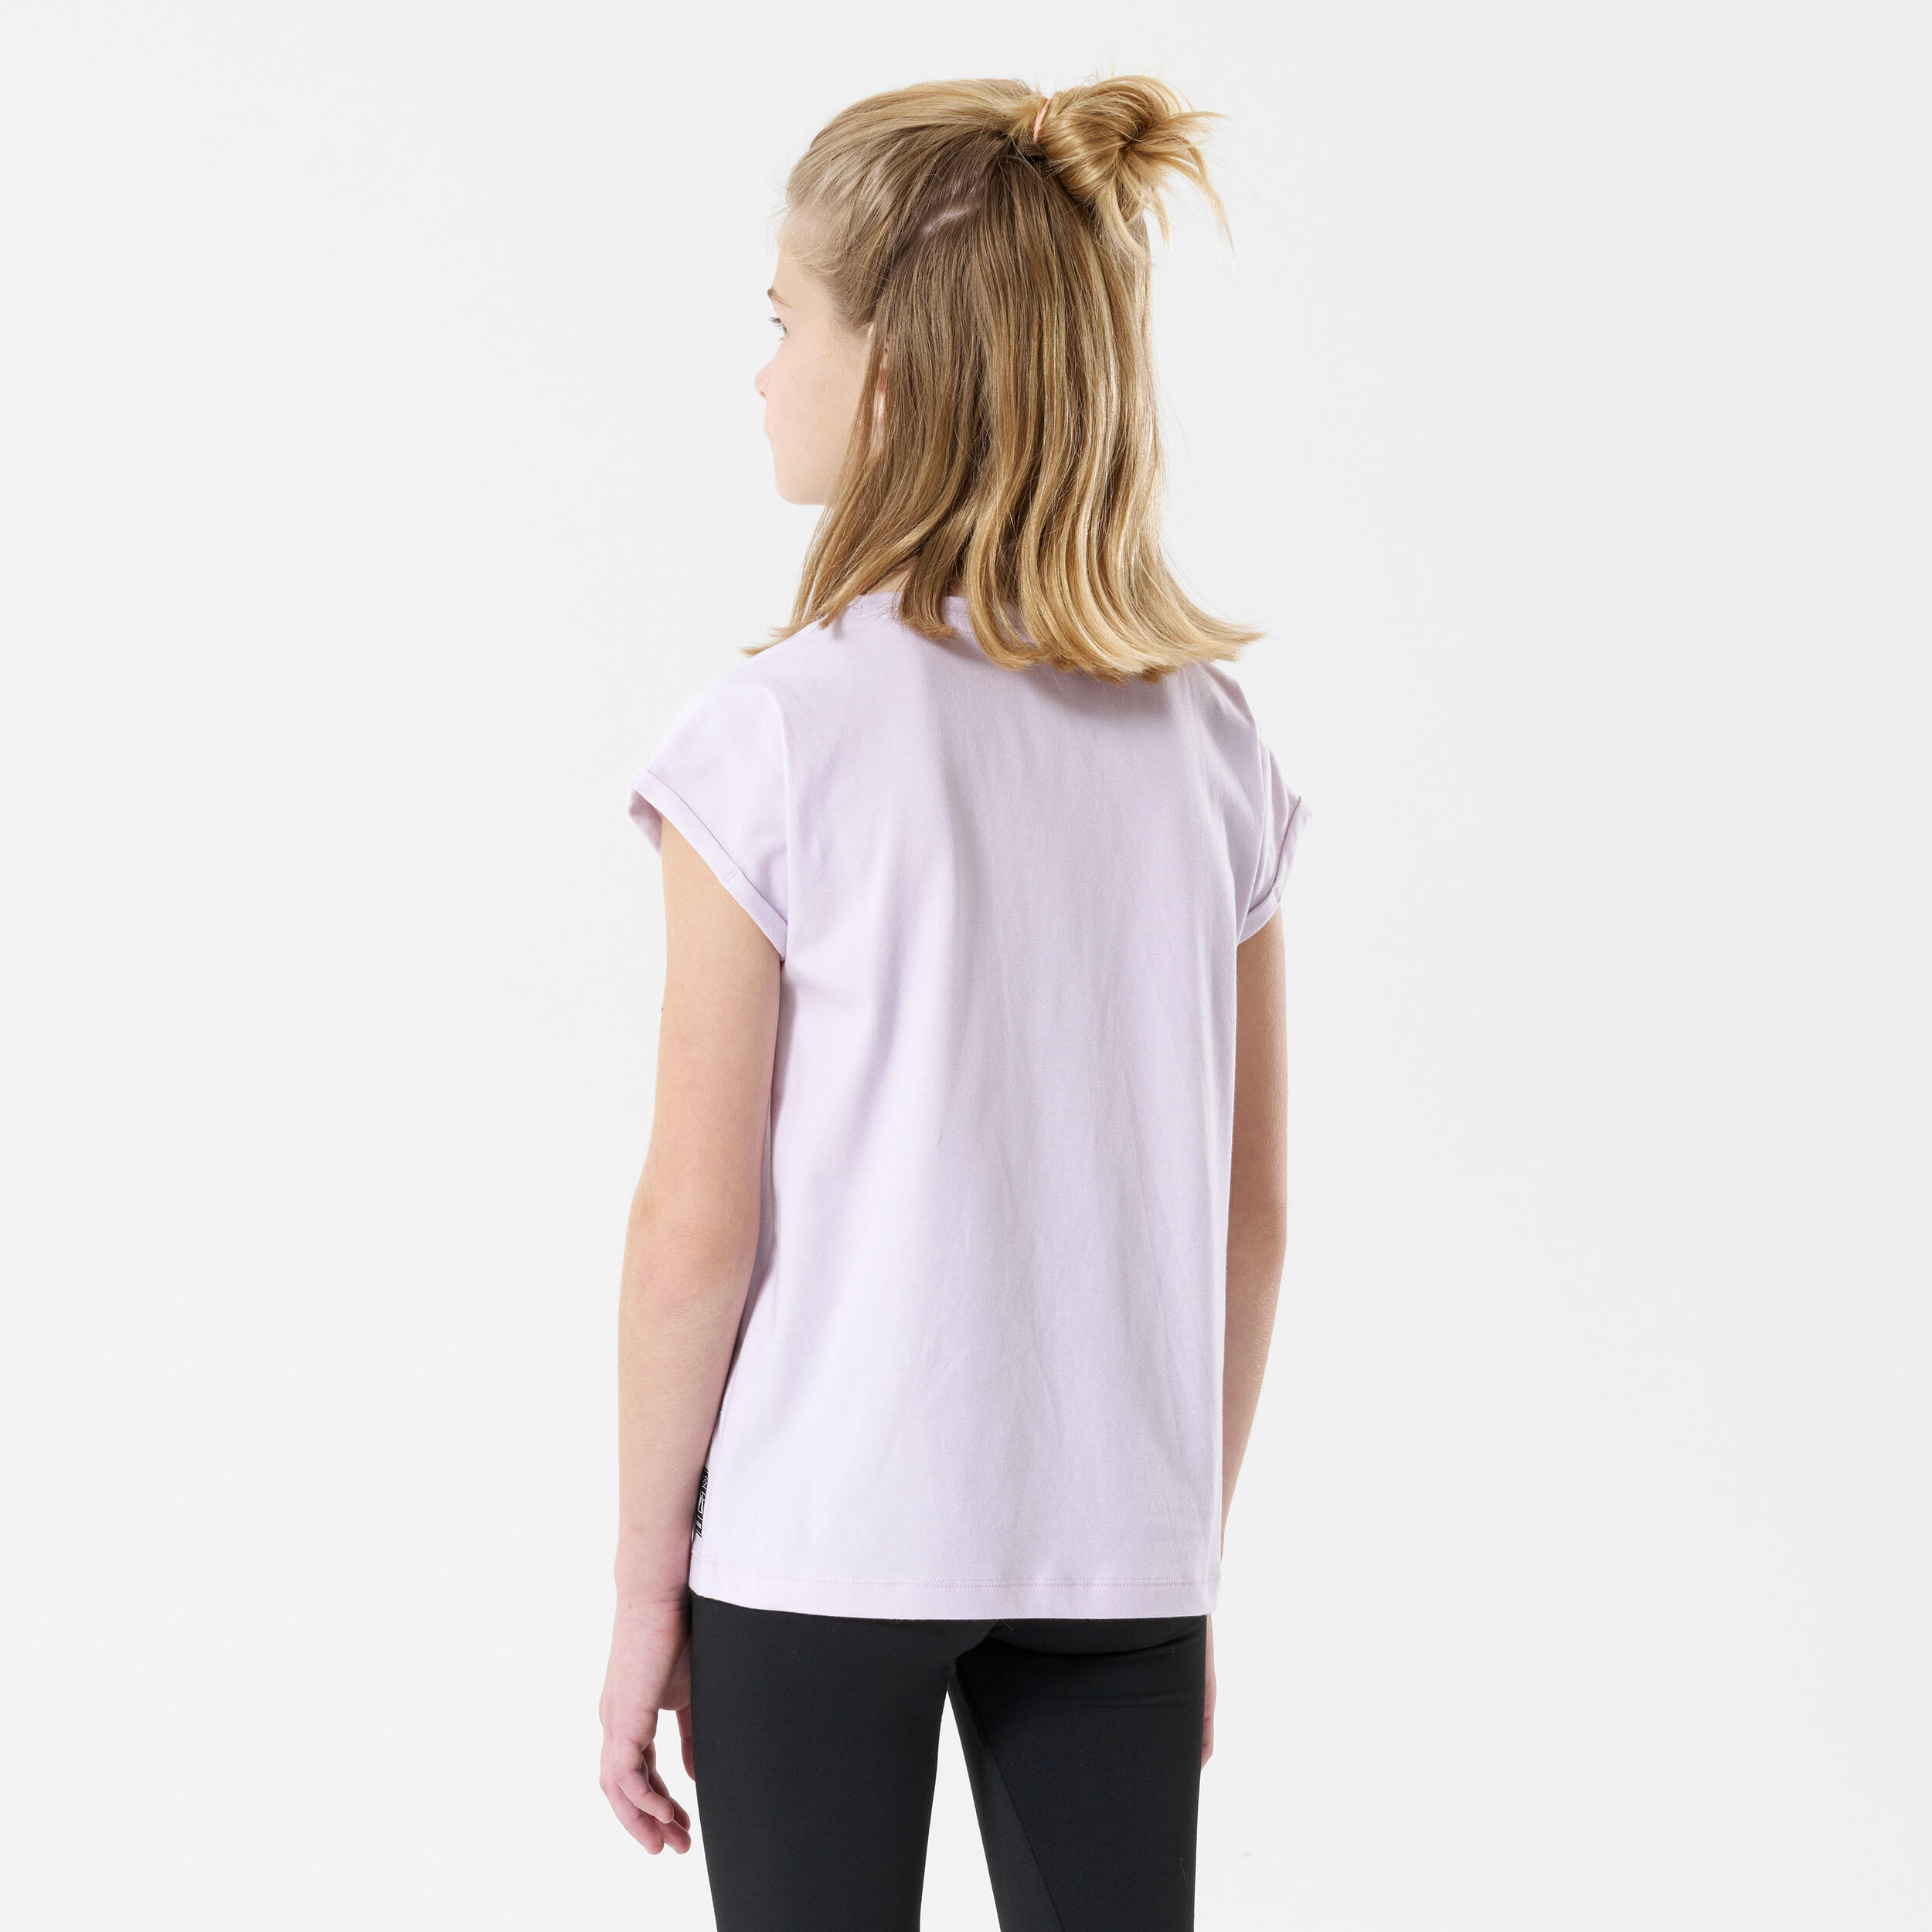 Child's hiking T-Shirt - MH100 purple - 7-15 years 4/6